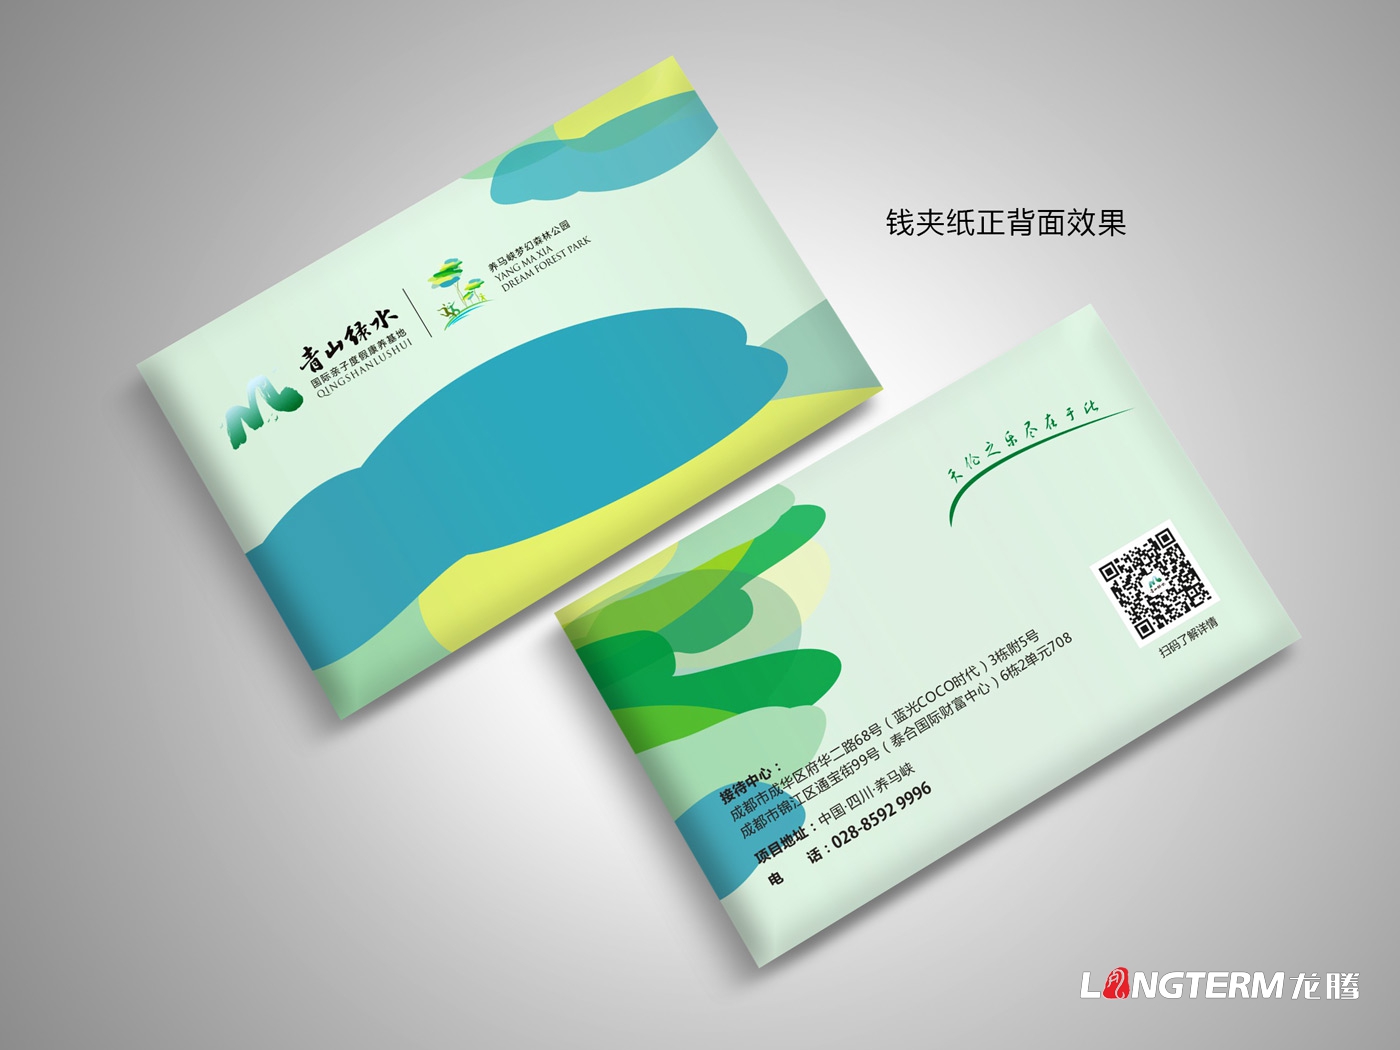 养马峡青山绿水康养基地宣传海报设计_养老地产项目广告物料宣传设计